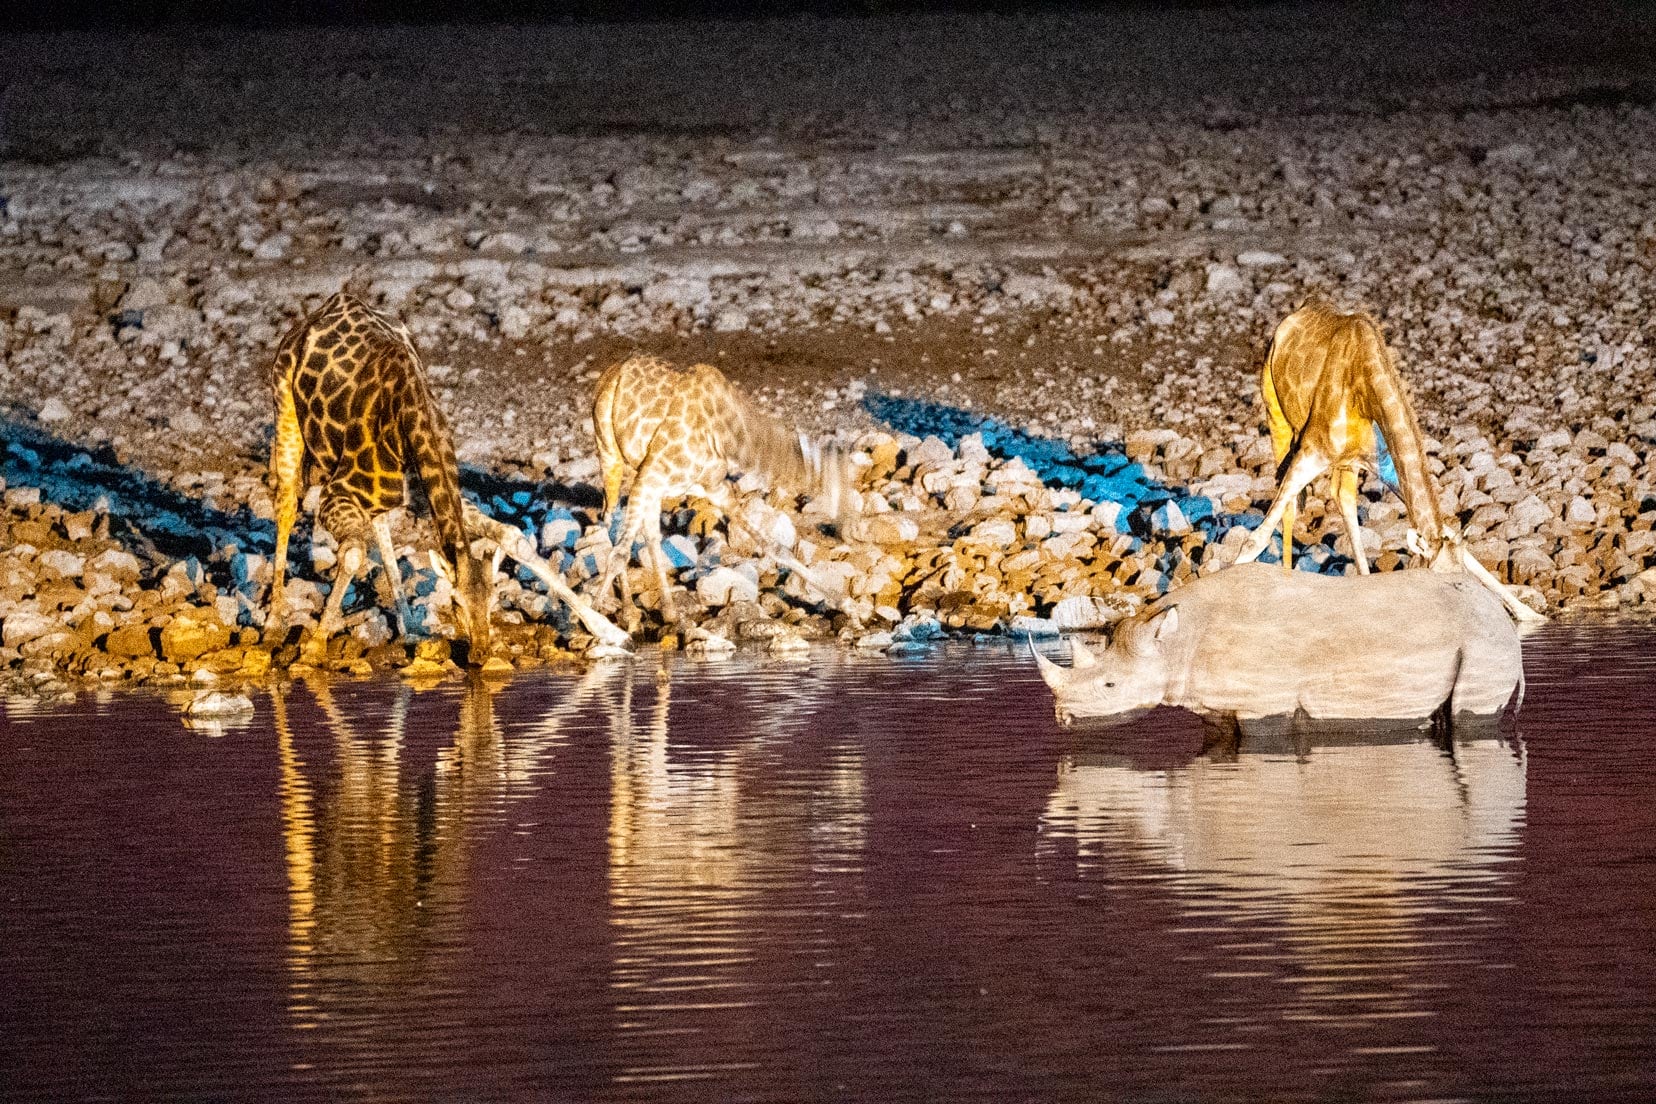 night-time shot at waterhole of giraffe and rhino using LR de-noising  